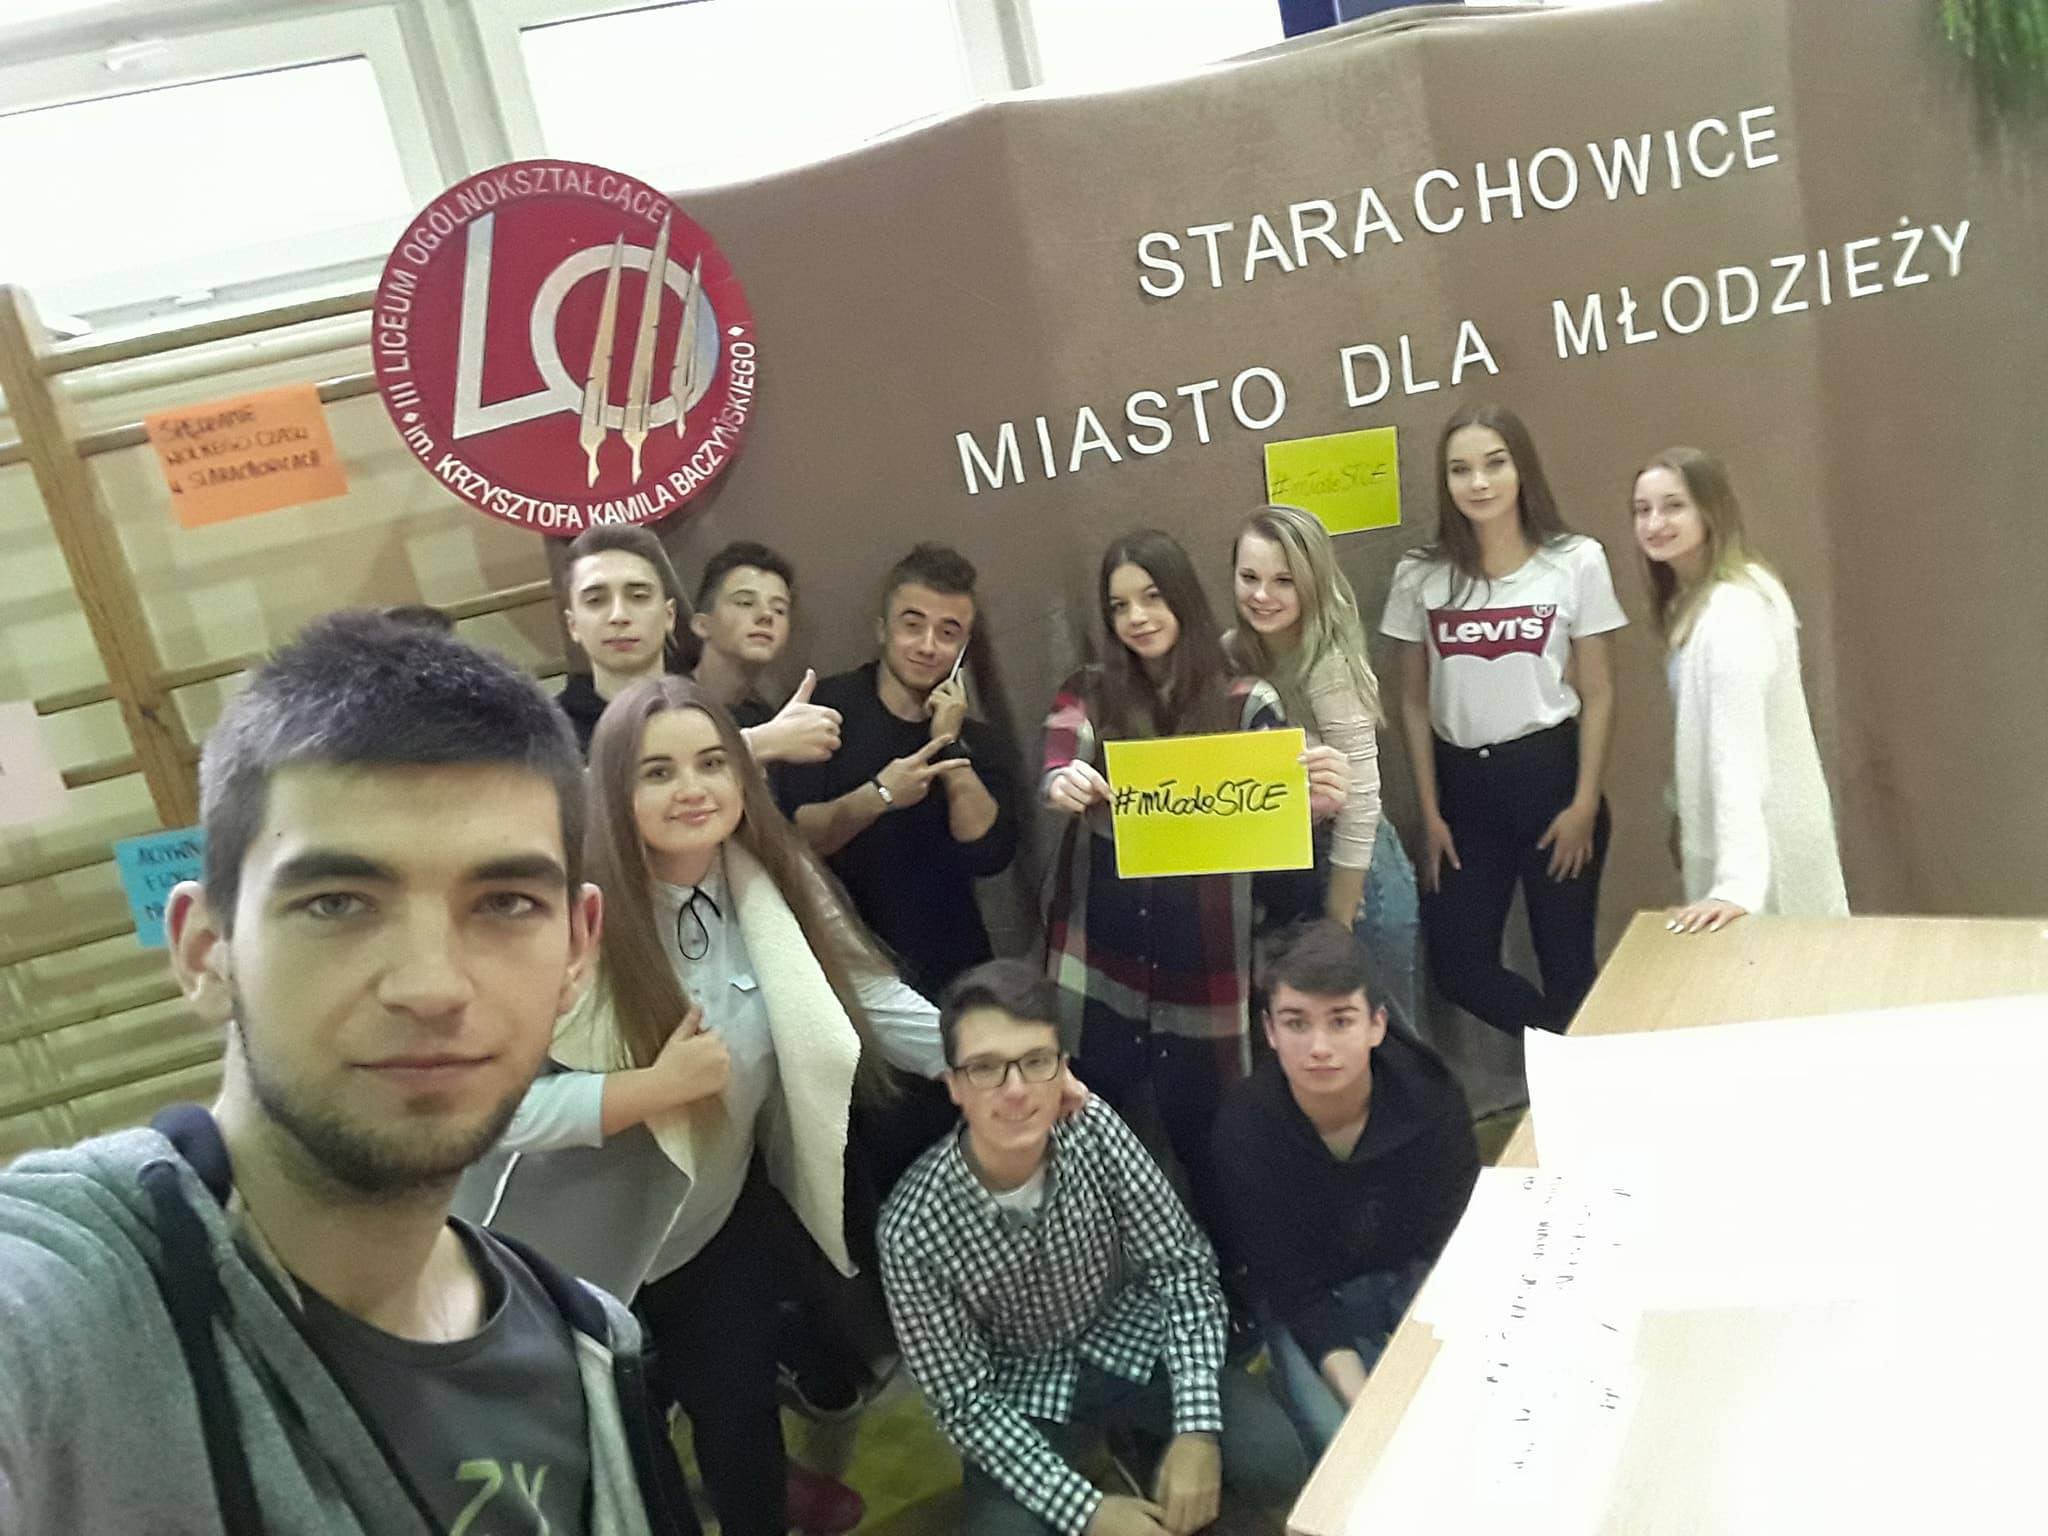 Radni podczas pierwszego spotkania w ramach projektu "Starachowice - Miasto dla młodzieży"